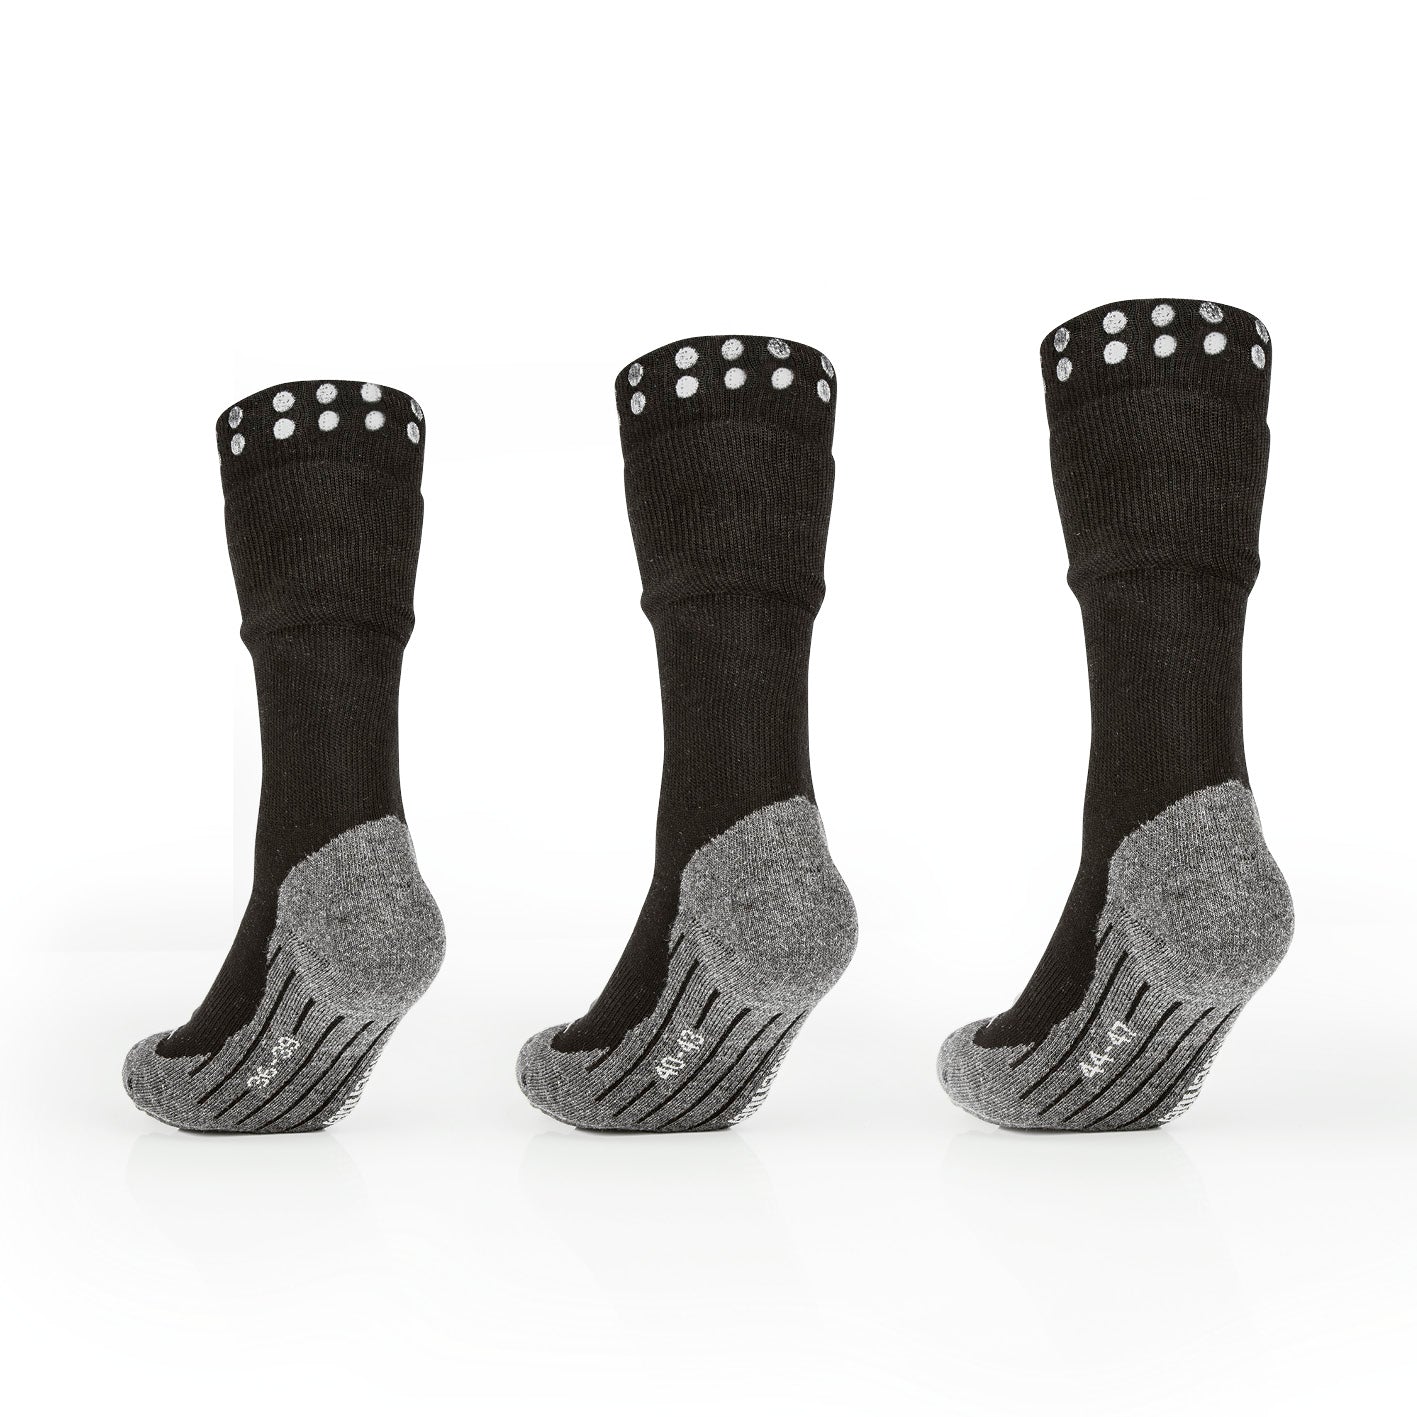 Funktions-Socke mit Doppelschaft - 2er-Set - Größe 40-43